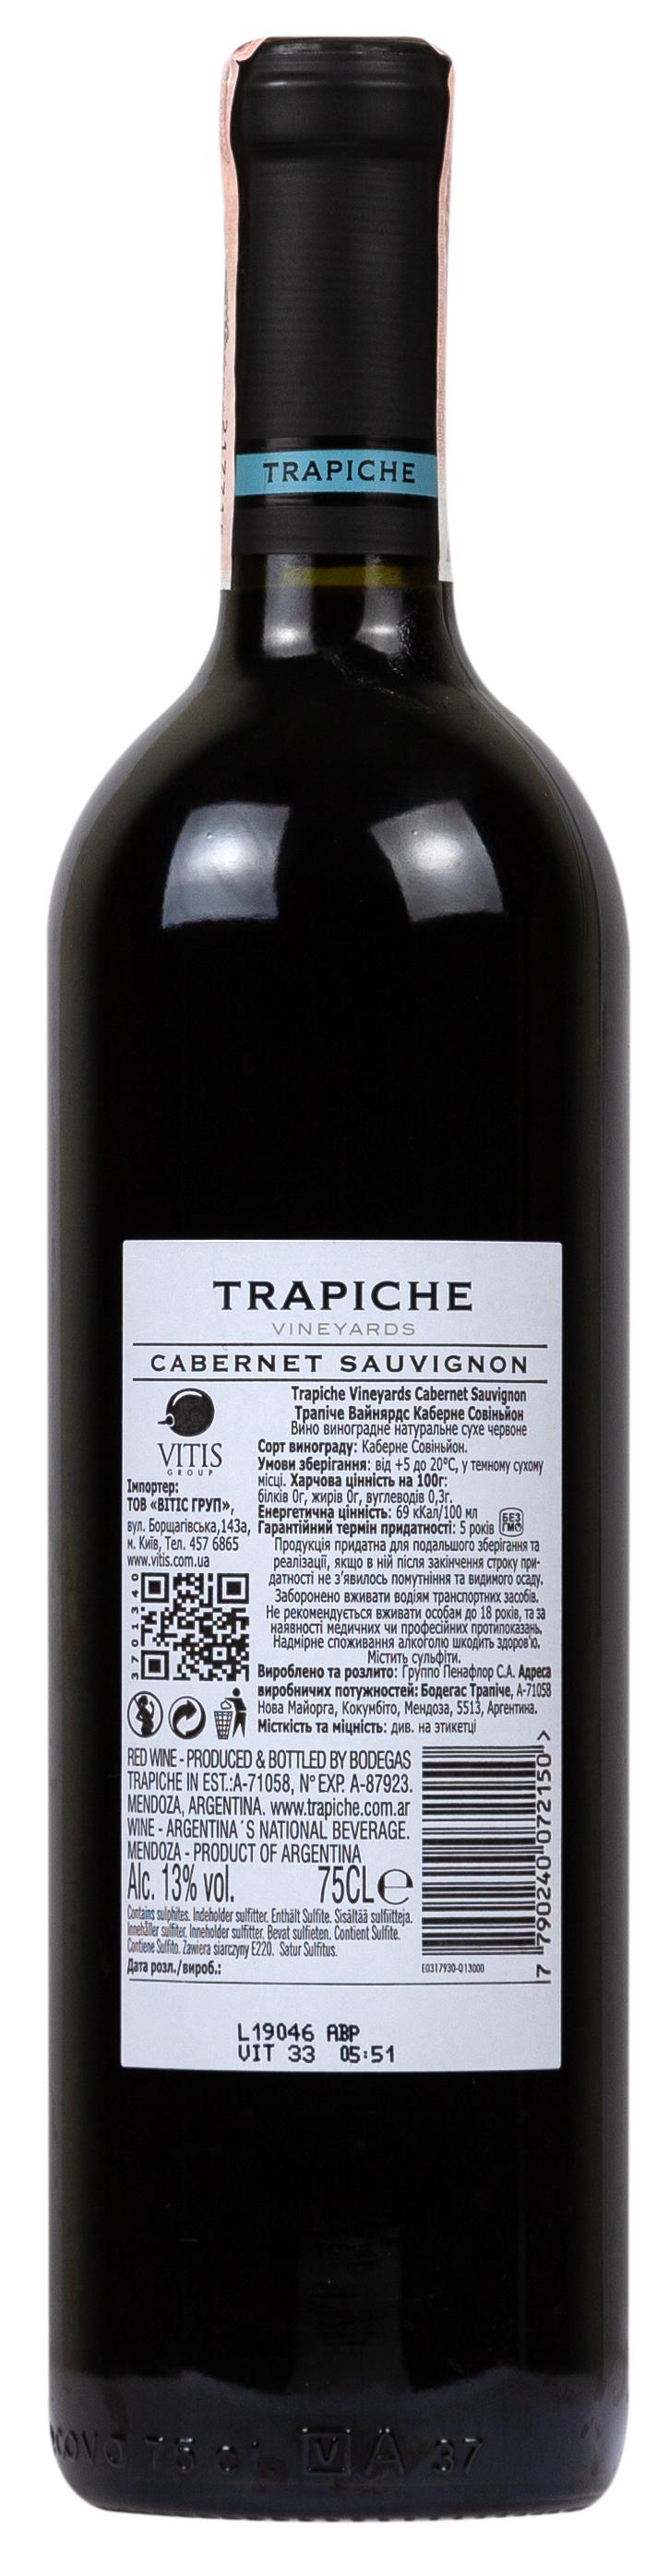 Trapiche Vineyards Cabernet Sauvignon 2018 Set 6 bottles - 2